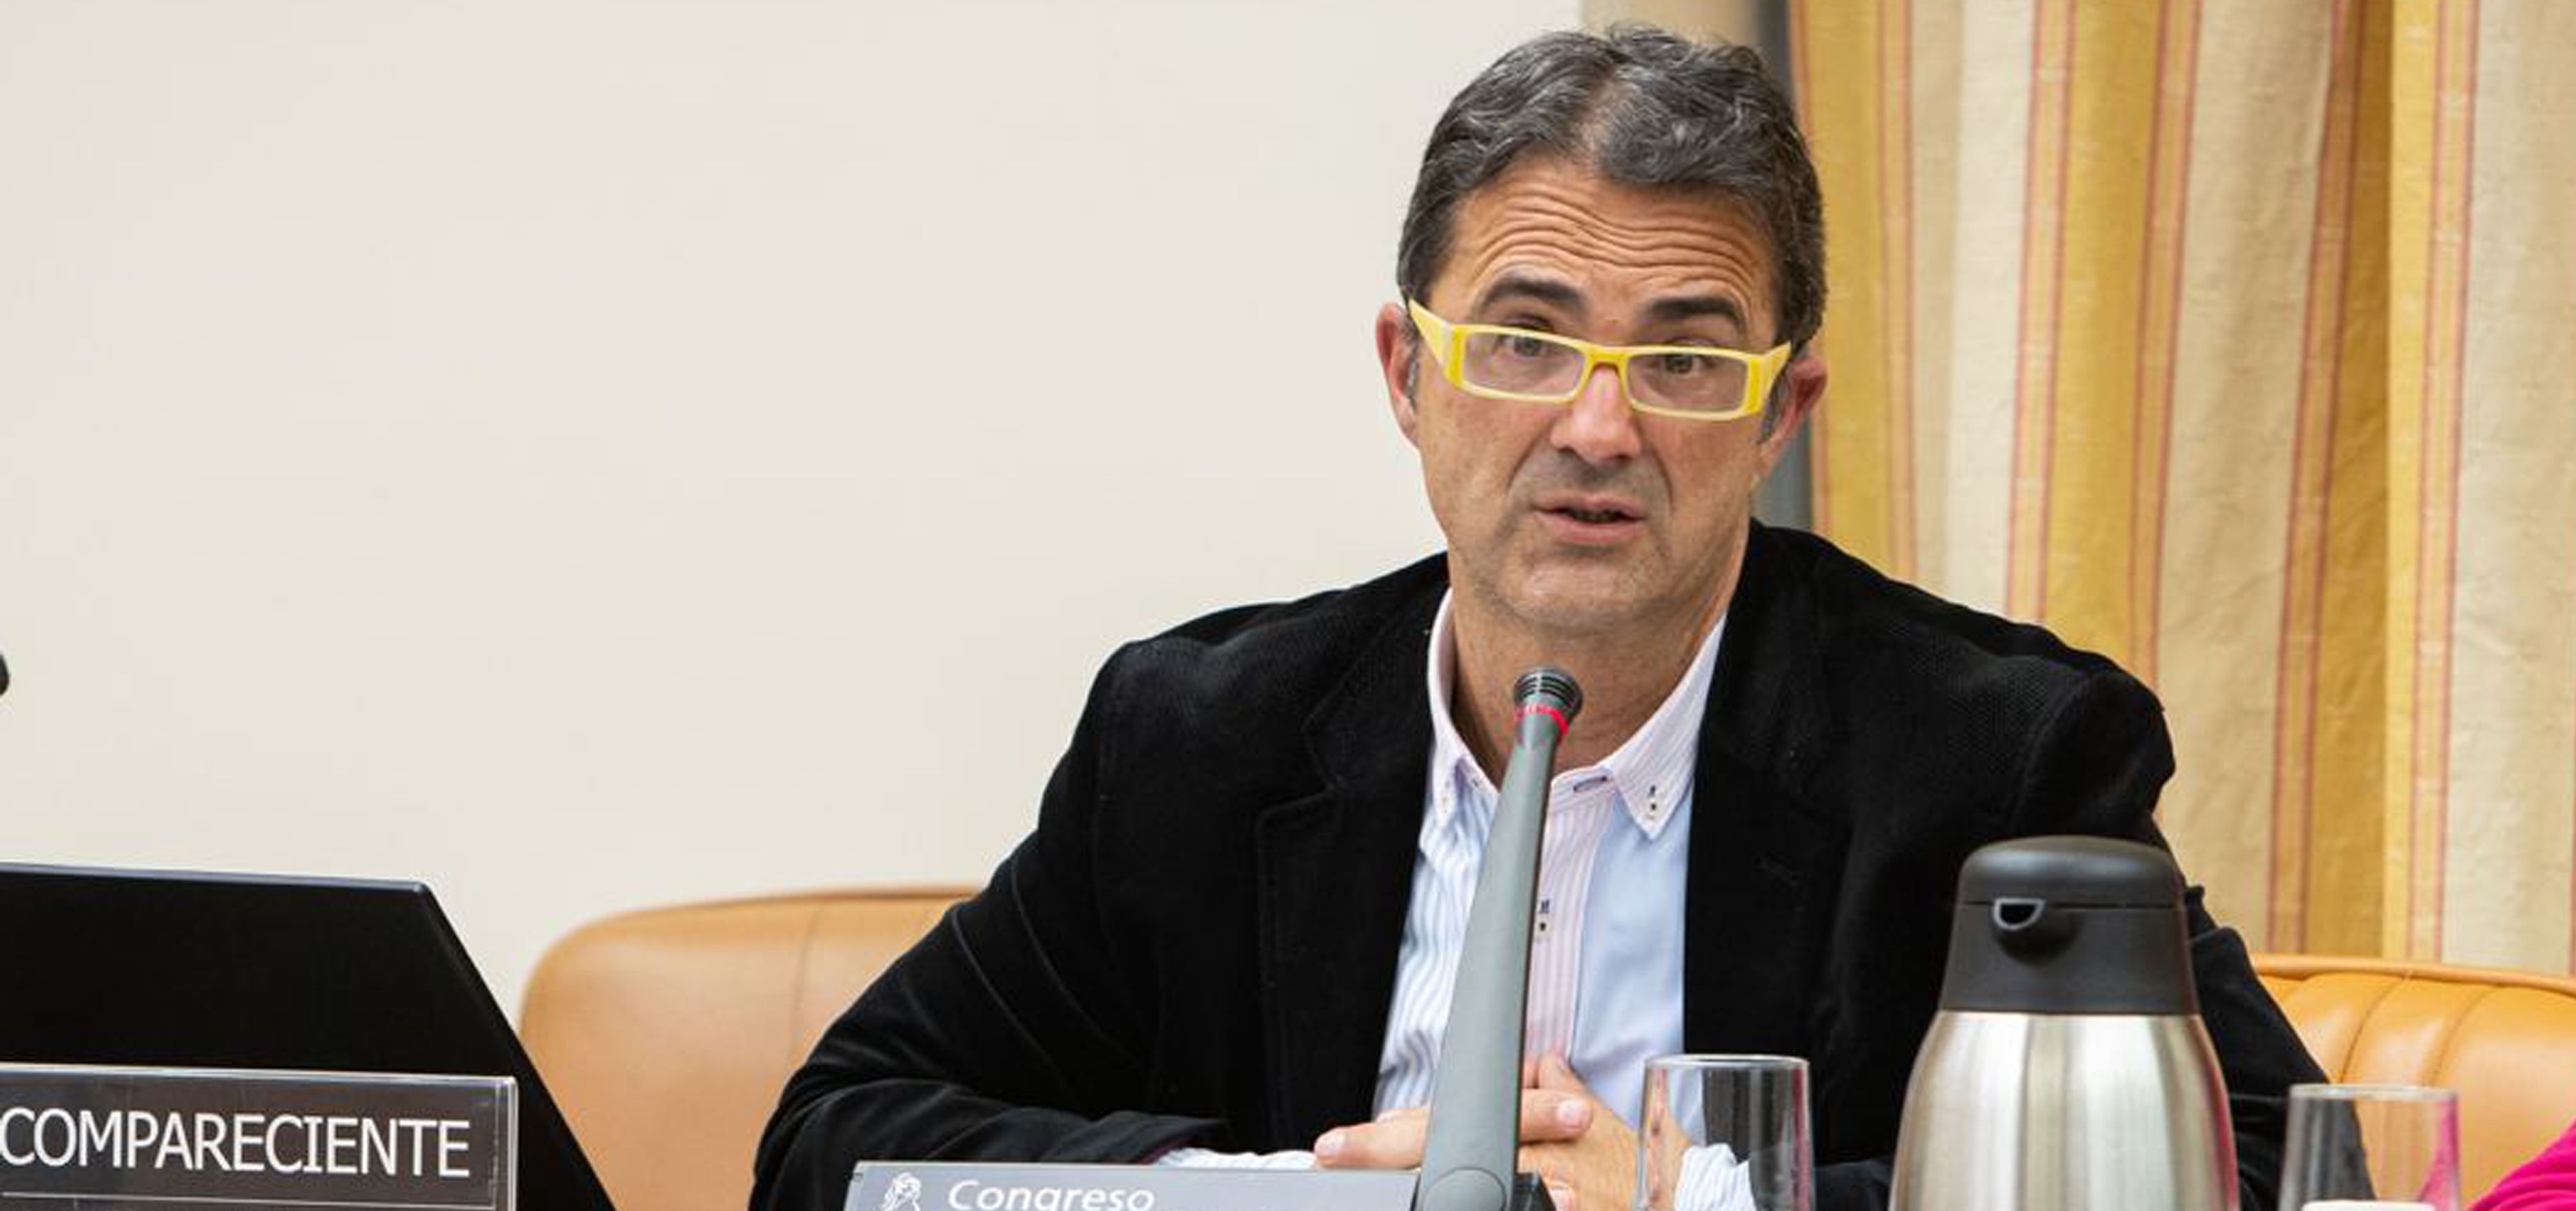 El presidente de la Federación Española de Enfermedades Raras (FEDER), Juan Carrión (Foto: Congreso de los Diputados)